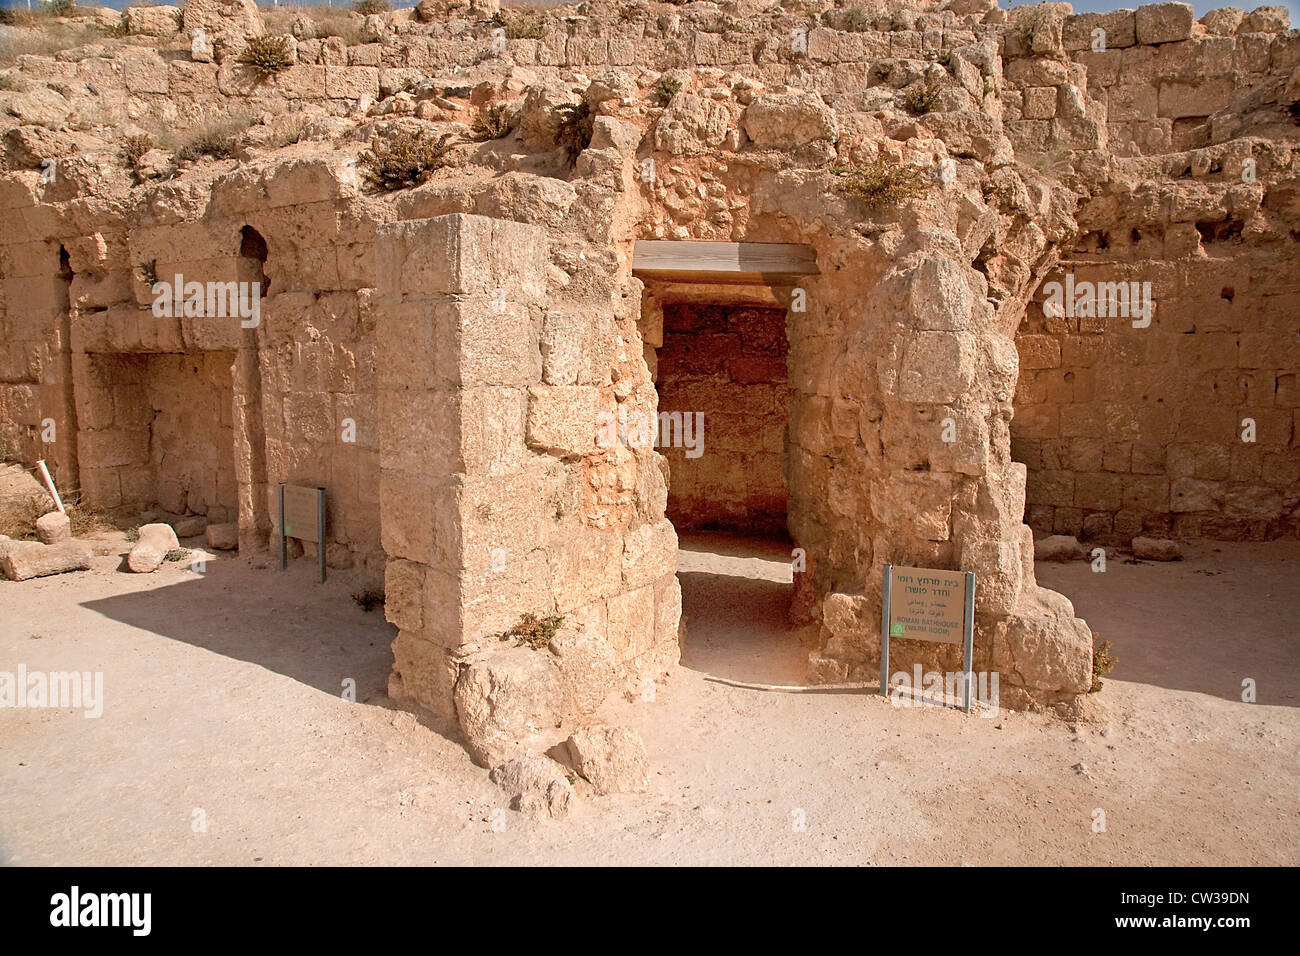 Israele, West Bank, la Giudea, Herodion un castello fortezza costruito dal re Erode 20 E.V. Roman Bathhouse Foto Stock